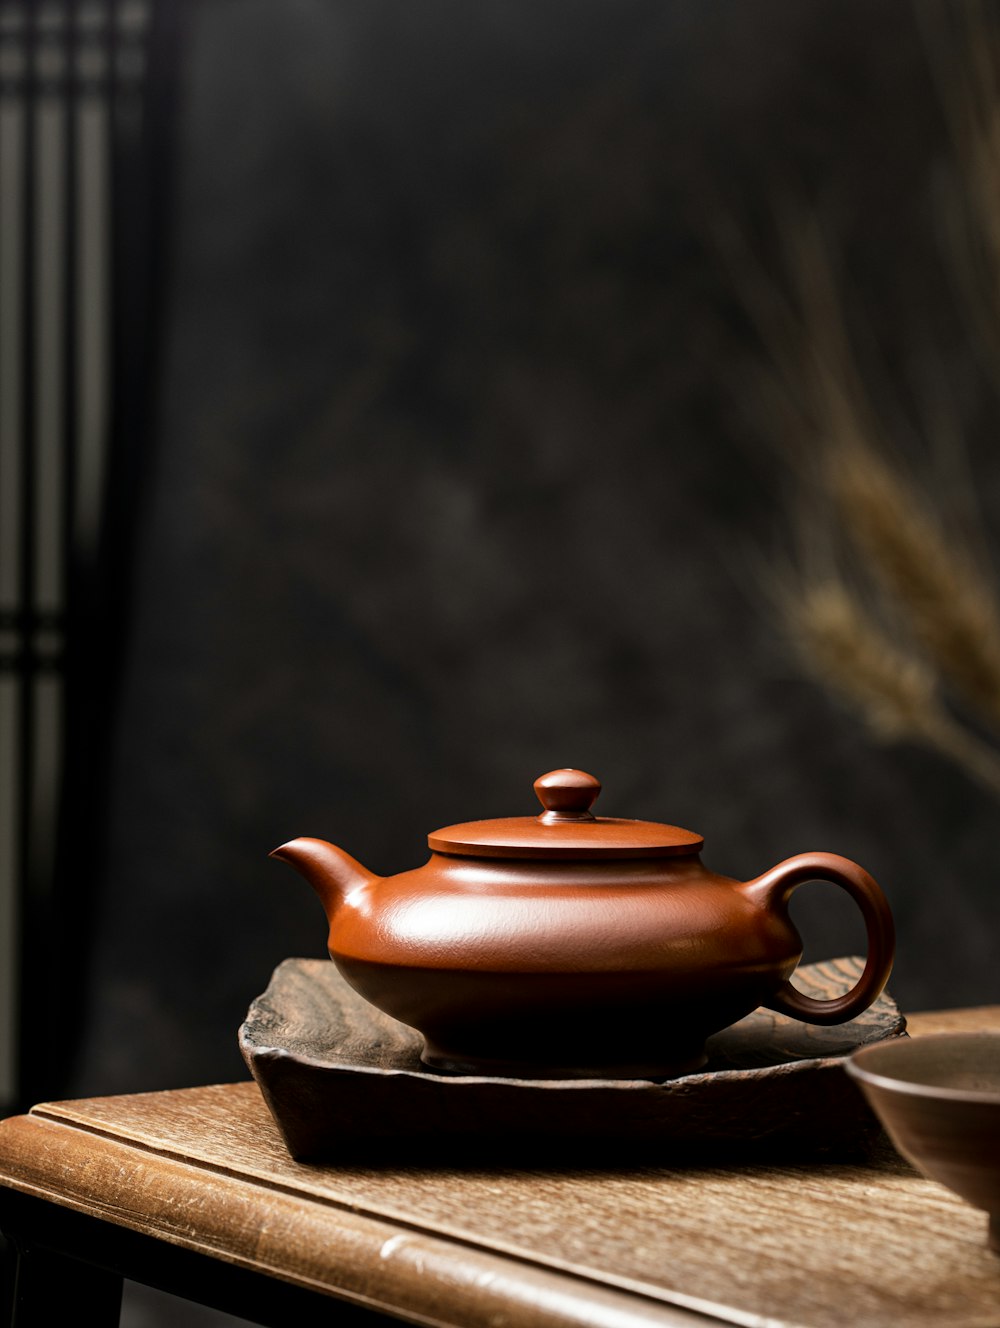 théière en céramique marron sur table en bois marron